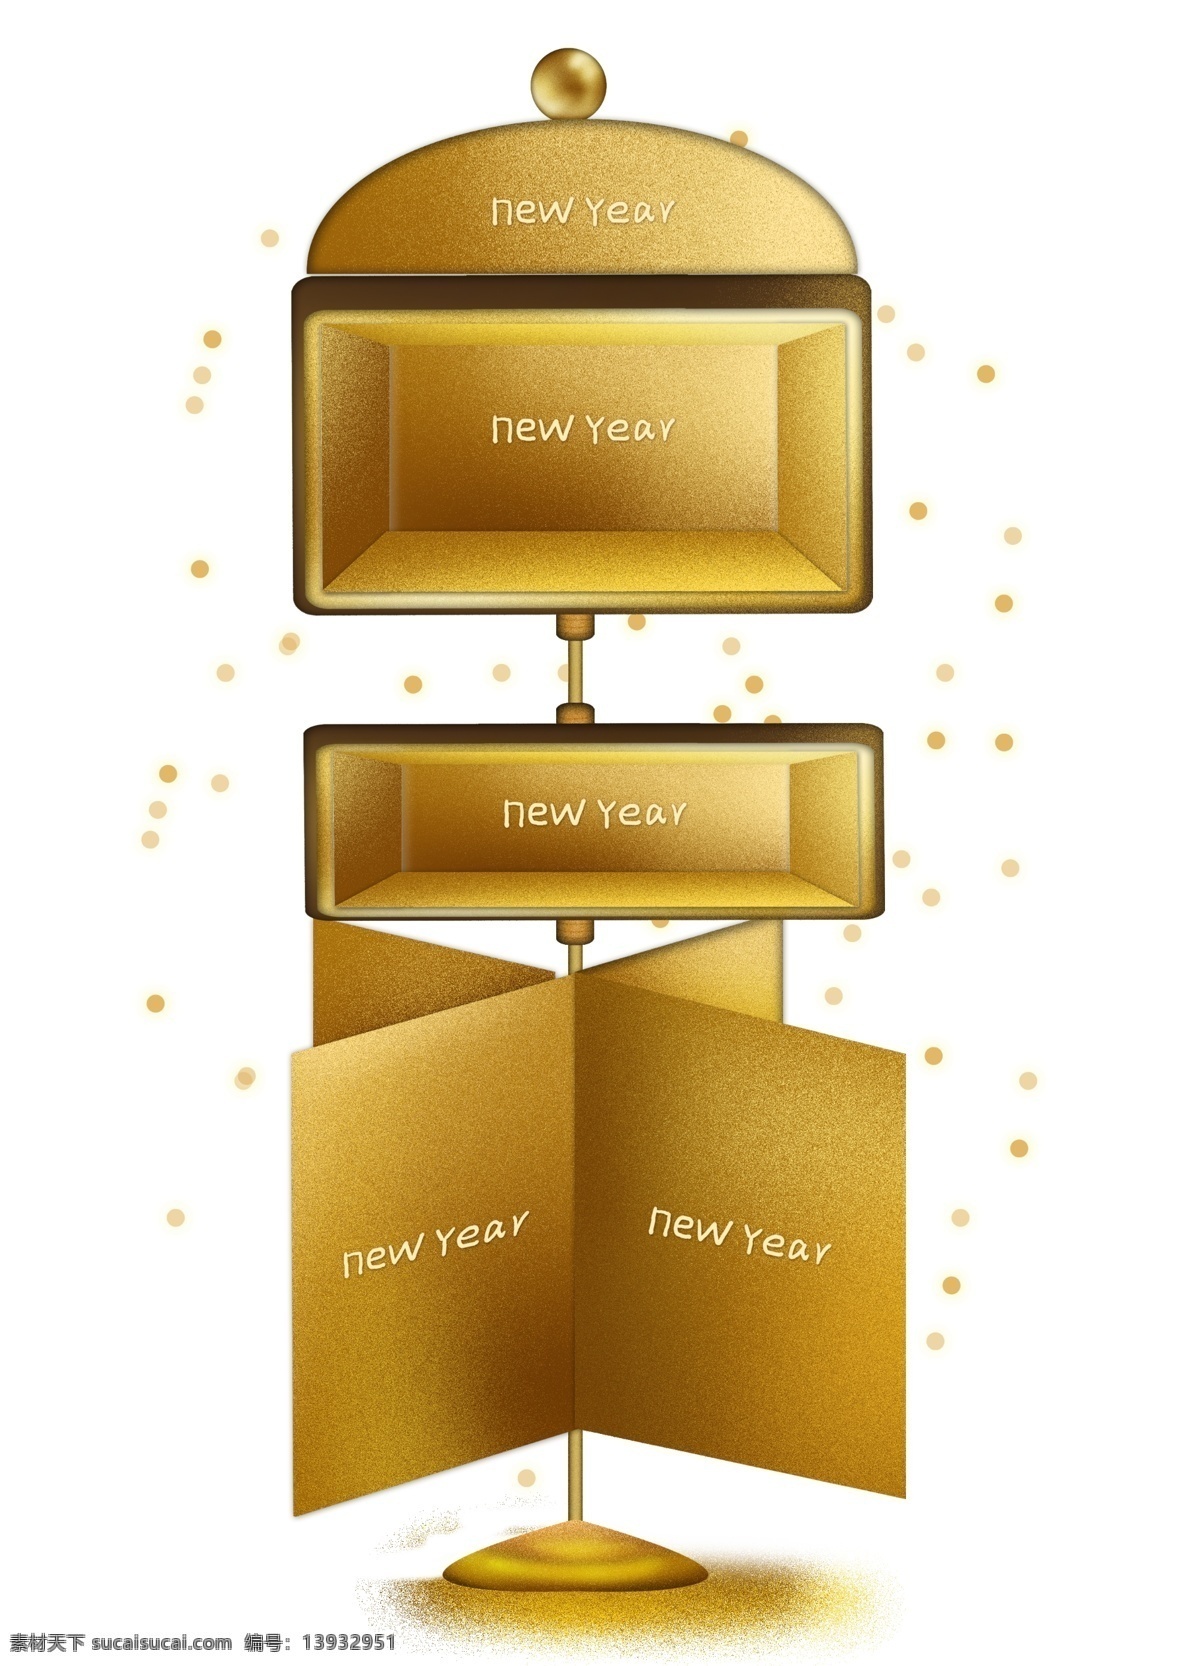 新年 庆典 黄金 商品 展架 文字 框 电商 文字框 跨年 黄金展架 金色展架 金属 金色